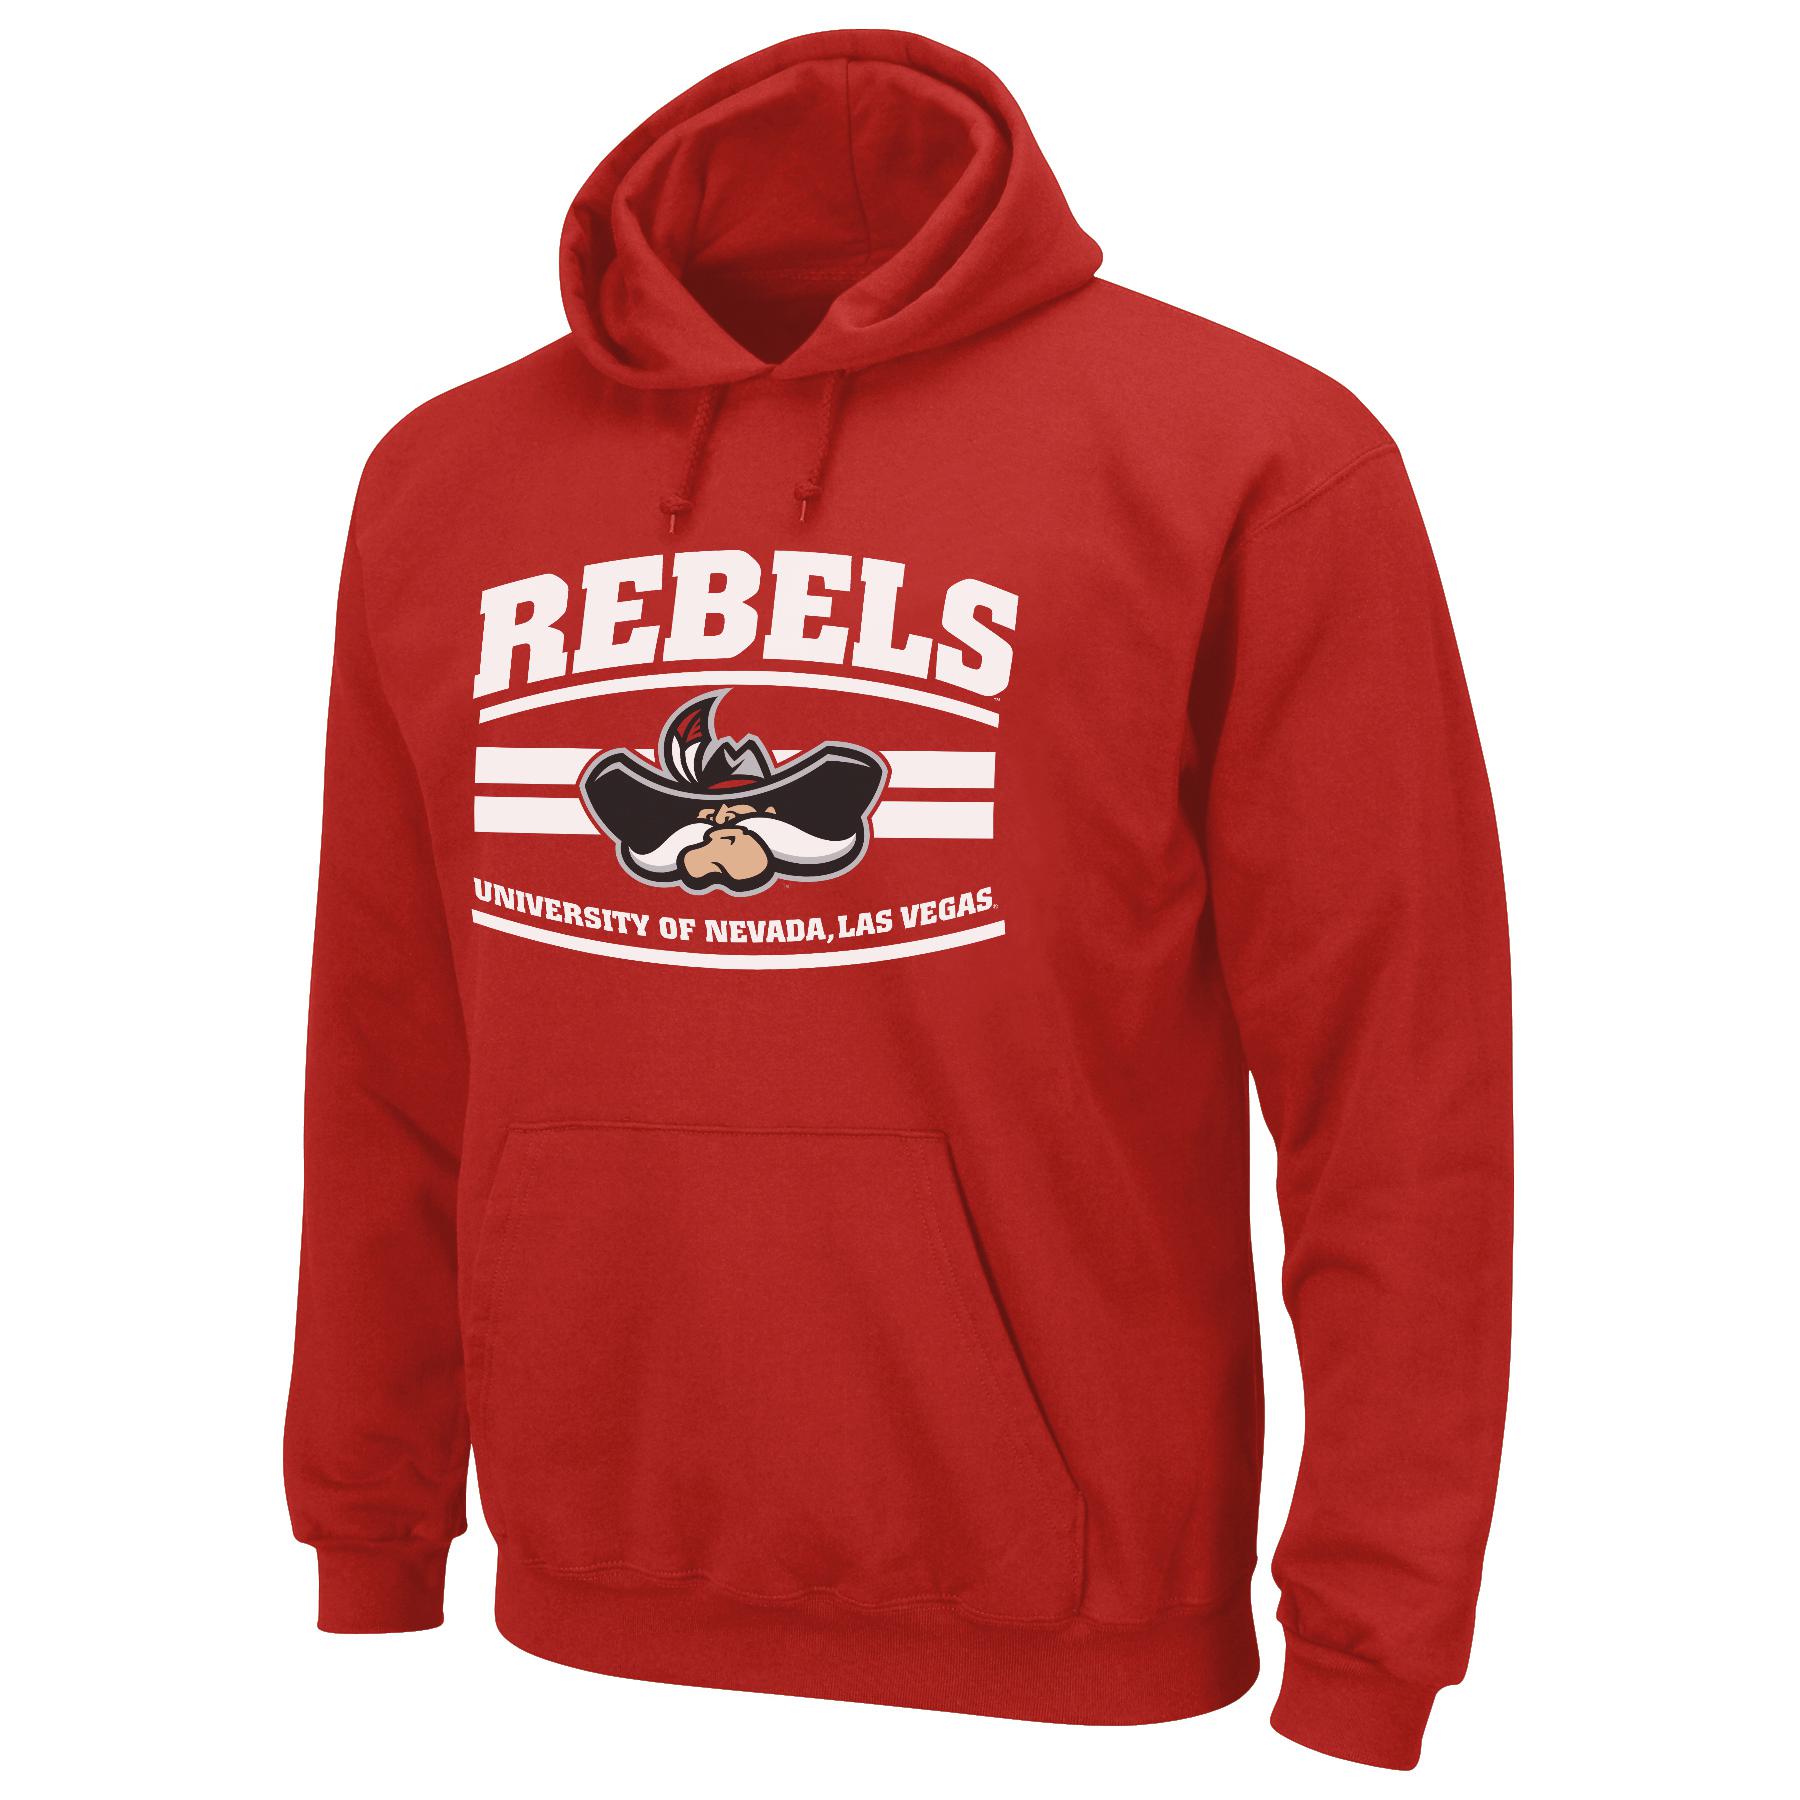 NCAA Men's Hooded Sweatshirt - University of Nevada Las Vegas Rebels